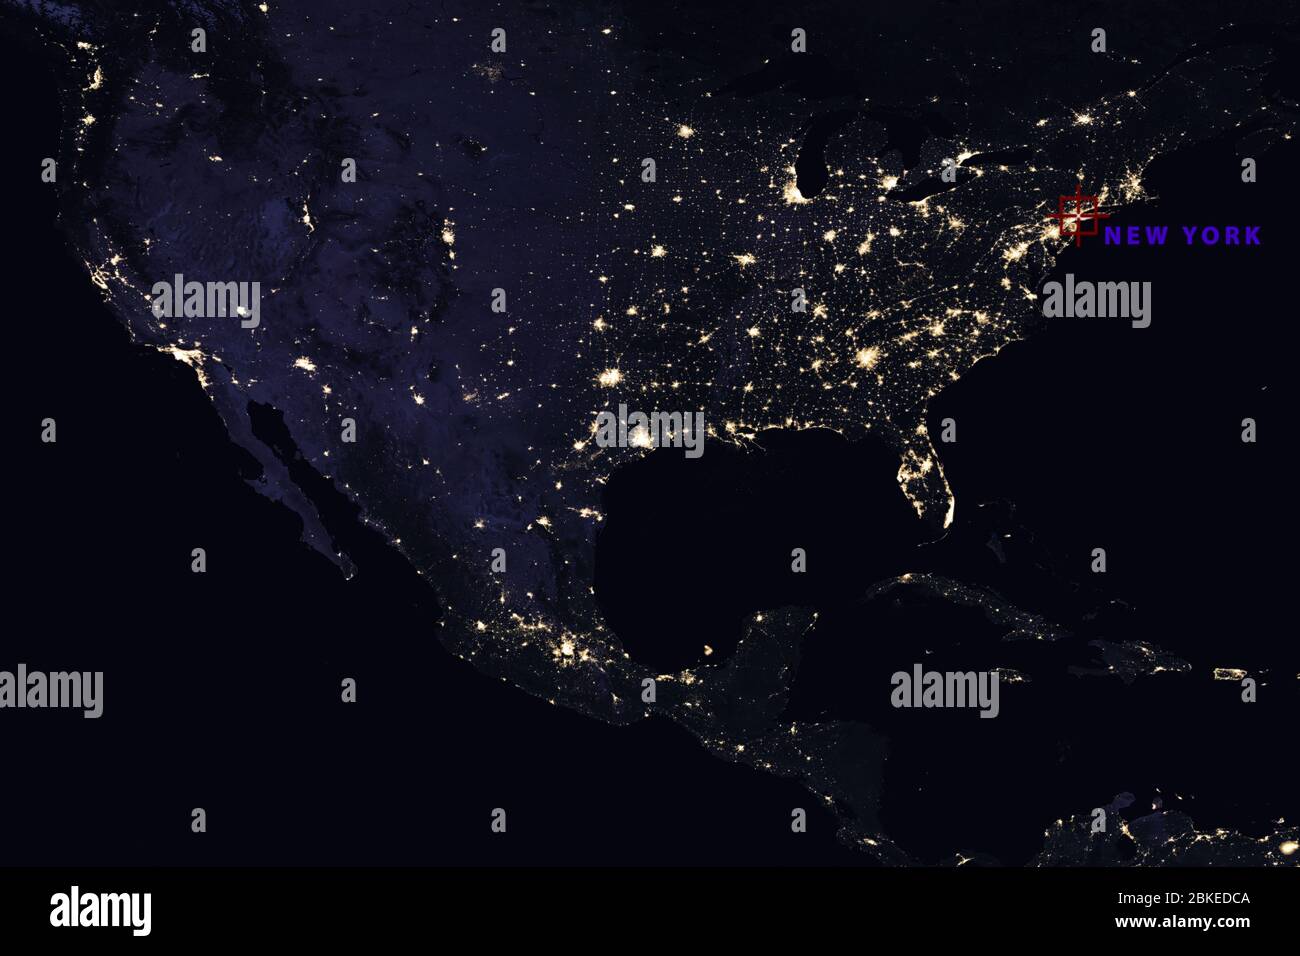 Hochauflösende Karte Zusammenstellung der USA bei Nacht, die New York City zeigen - Elemente dieses Bildes, die von der NASA bereitgestellt wurden Stockfoto